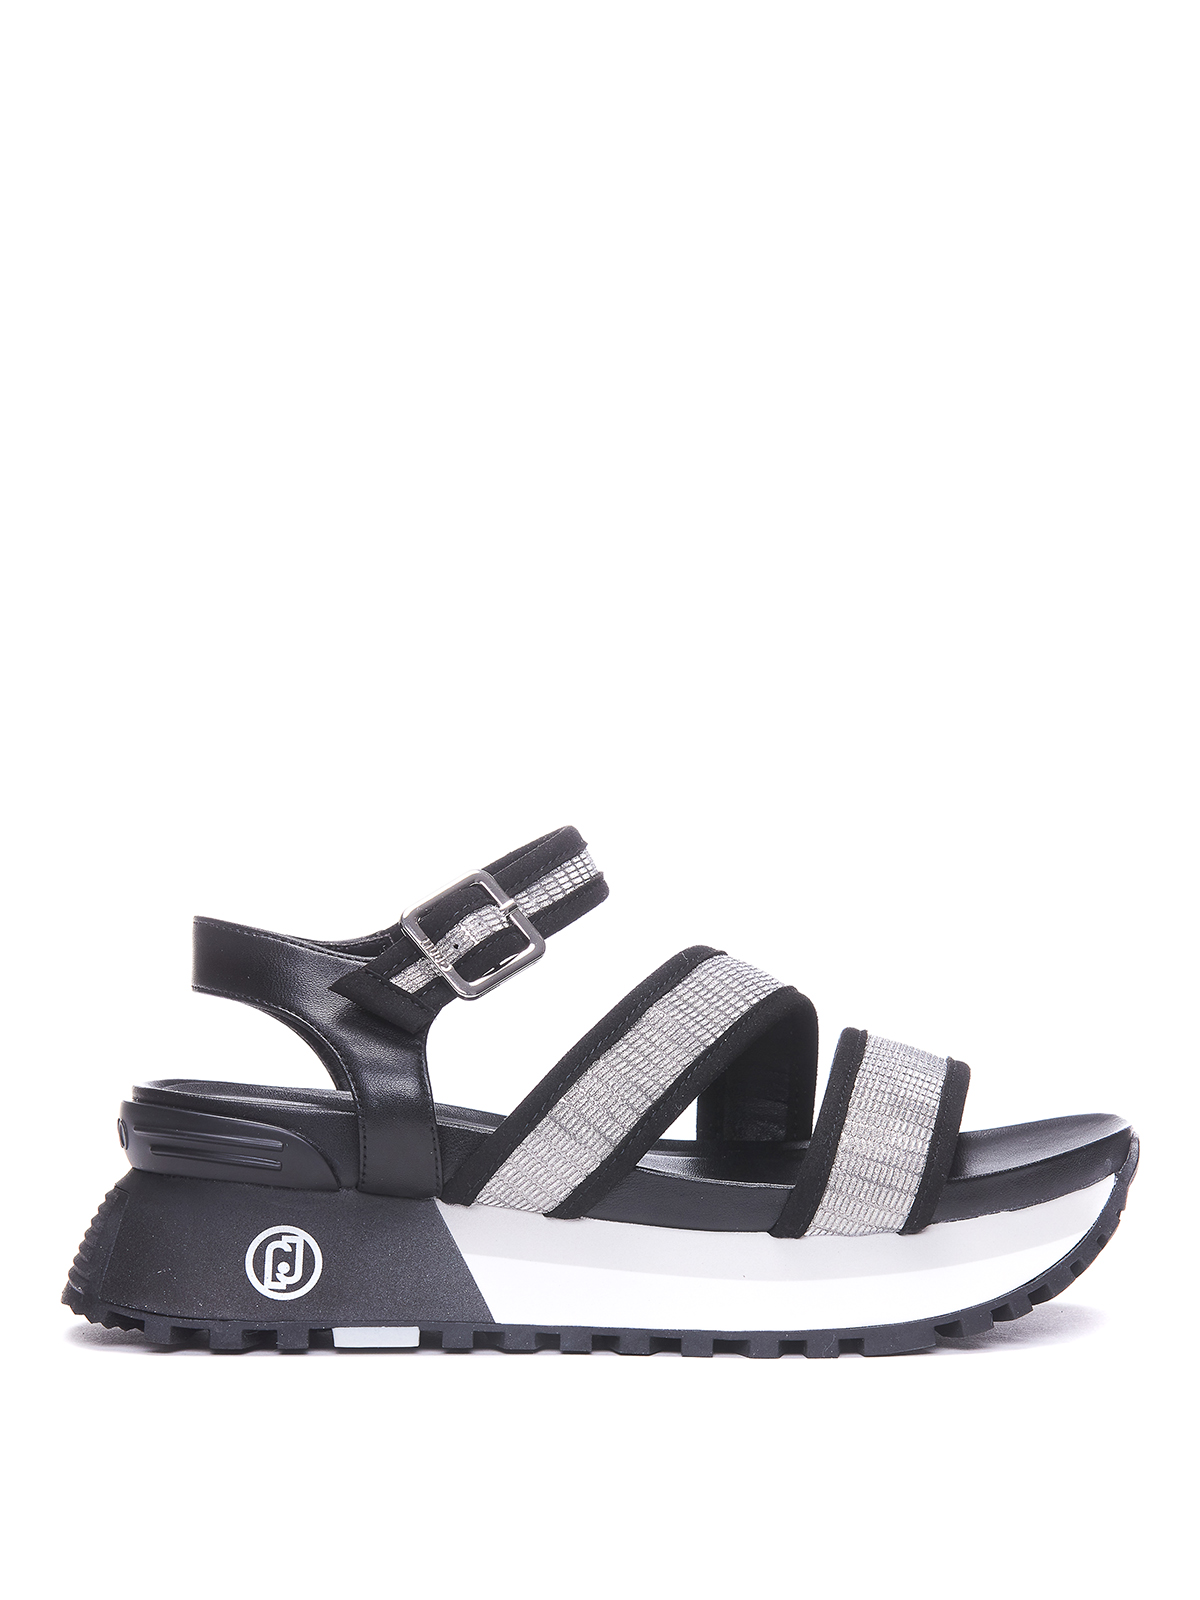 Sandals Liu Jo - Platform glitter sandals - BA3159EX13522222 | iKRIX.com